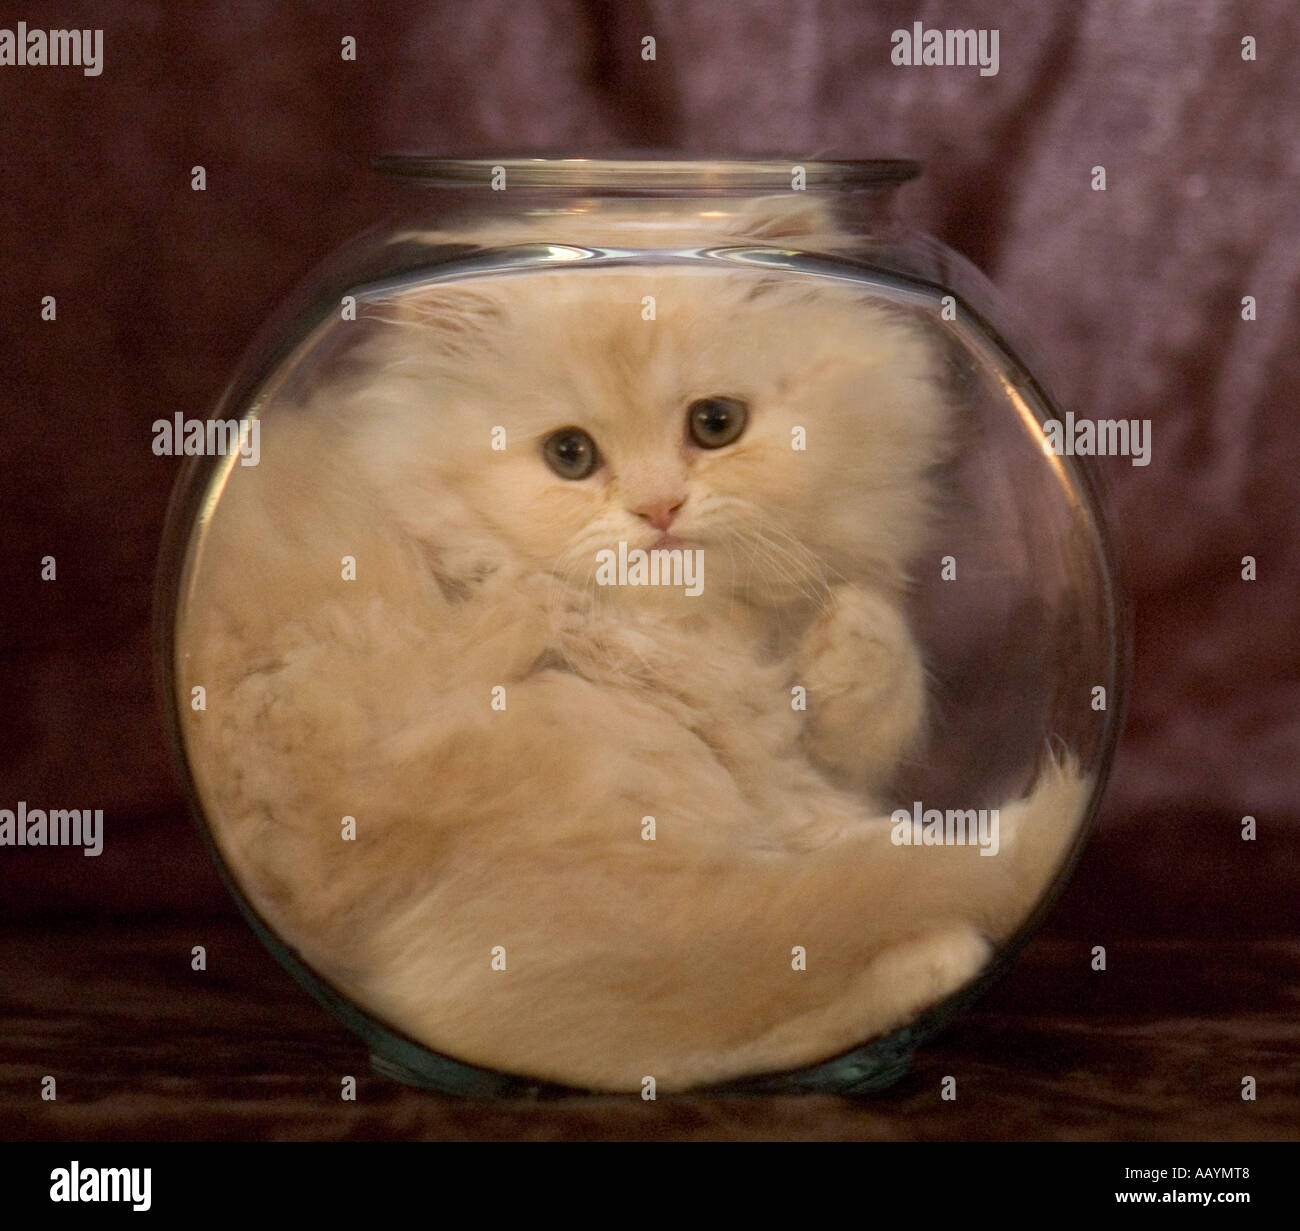 Mignon chaton persan blanc assis ou bloqué en poissons de verre bol. Banque D'Images